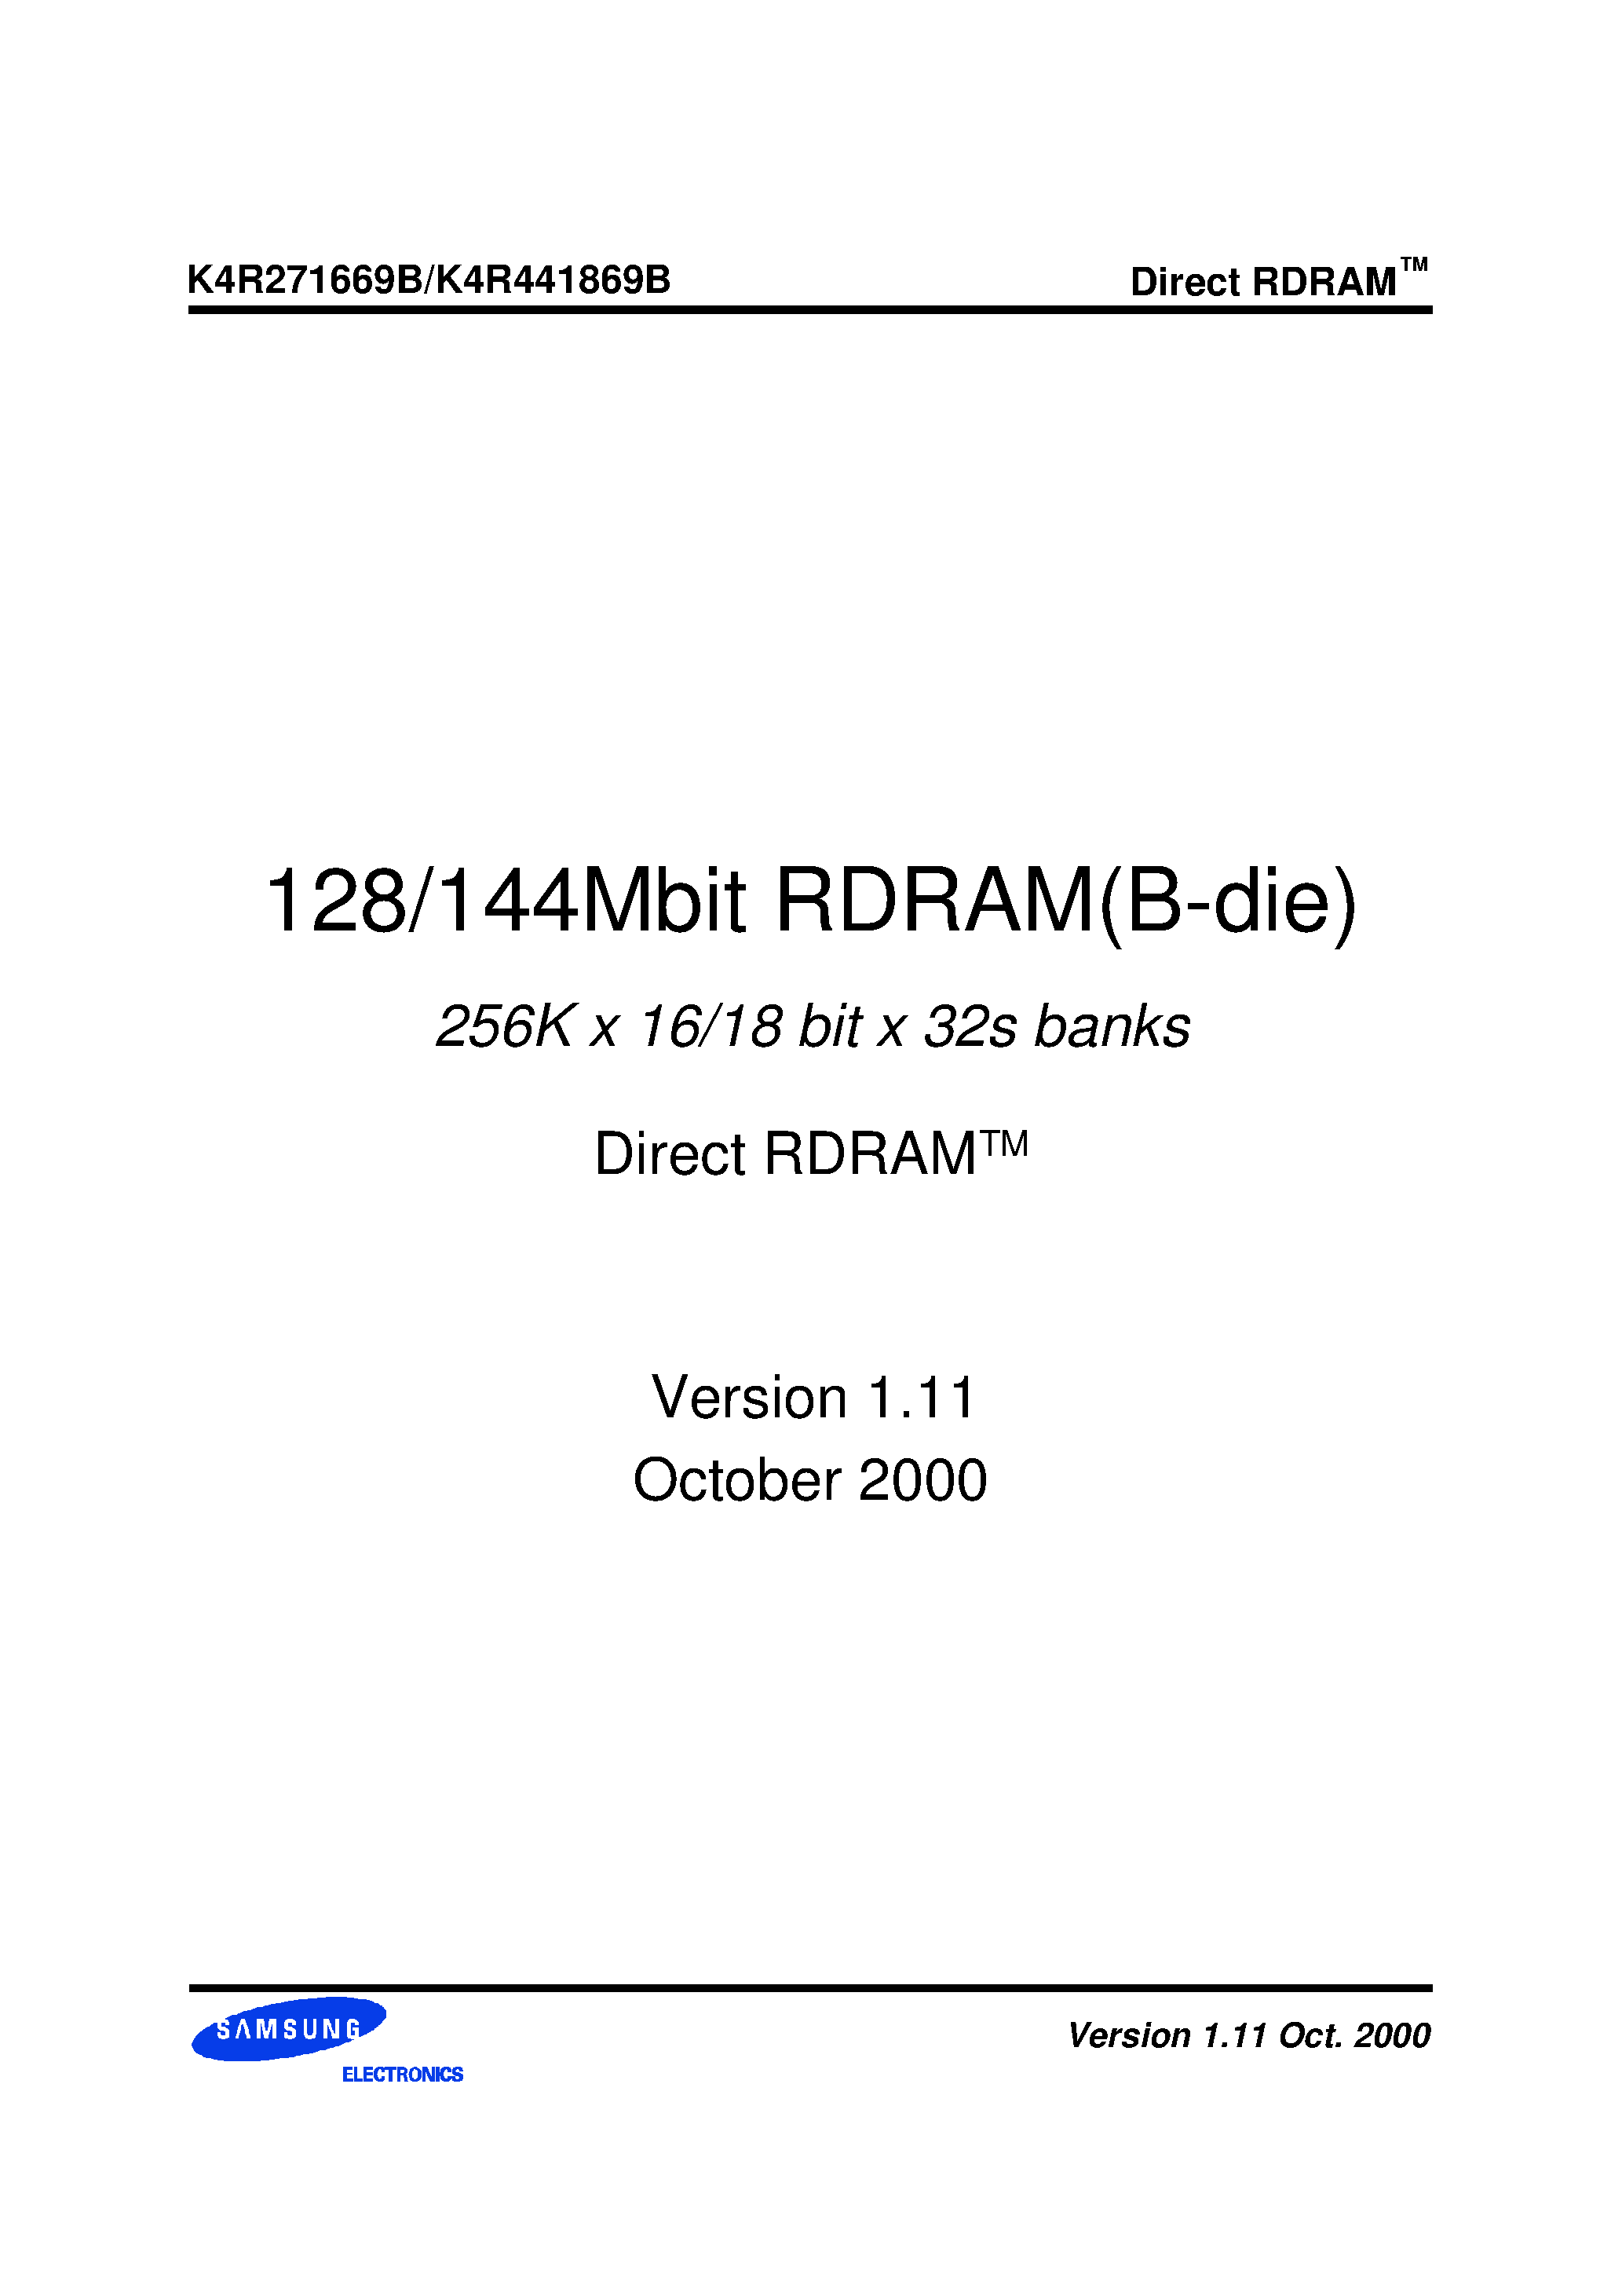 Даташит K4R441869B-N(M)CK7 - 256K x 16/18 bit x 32s banks Direct RDRAMTM страница 1